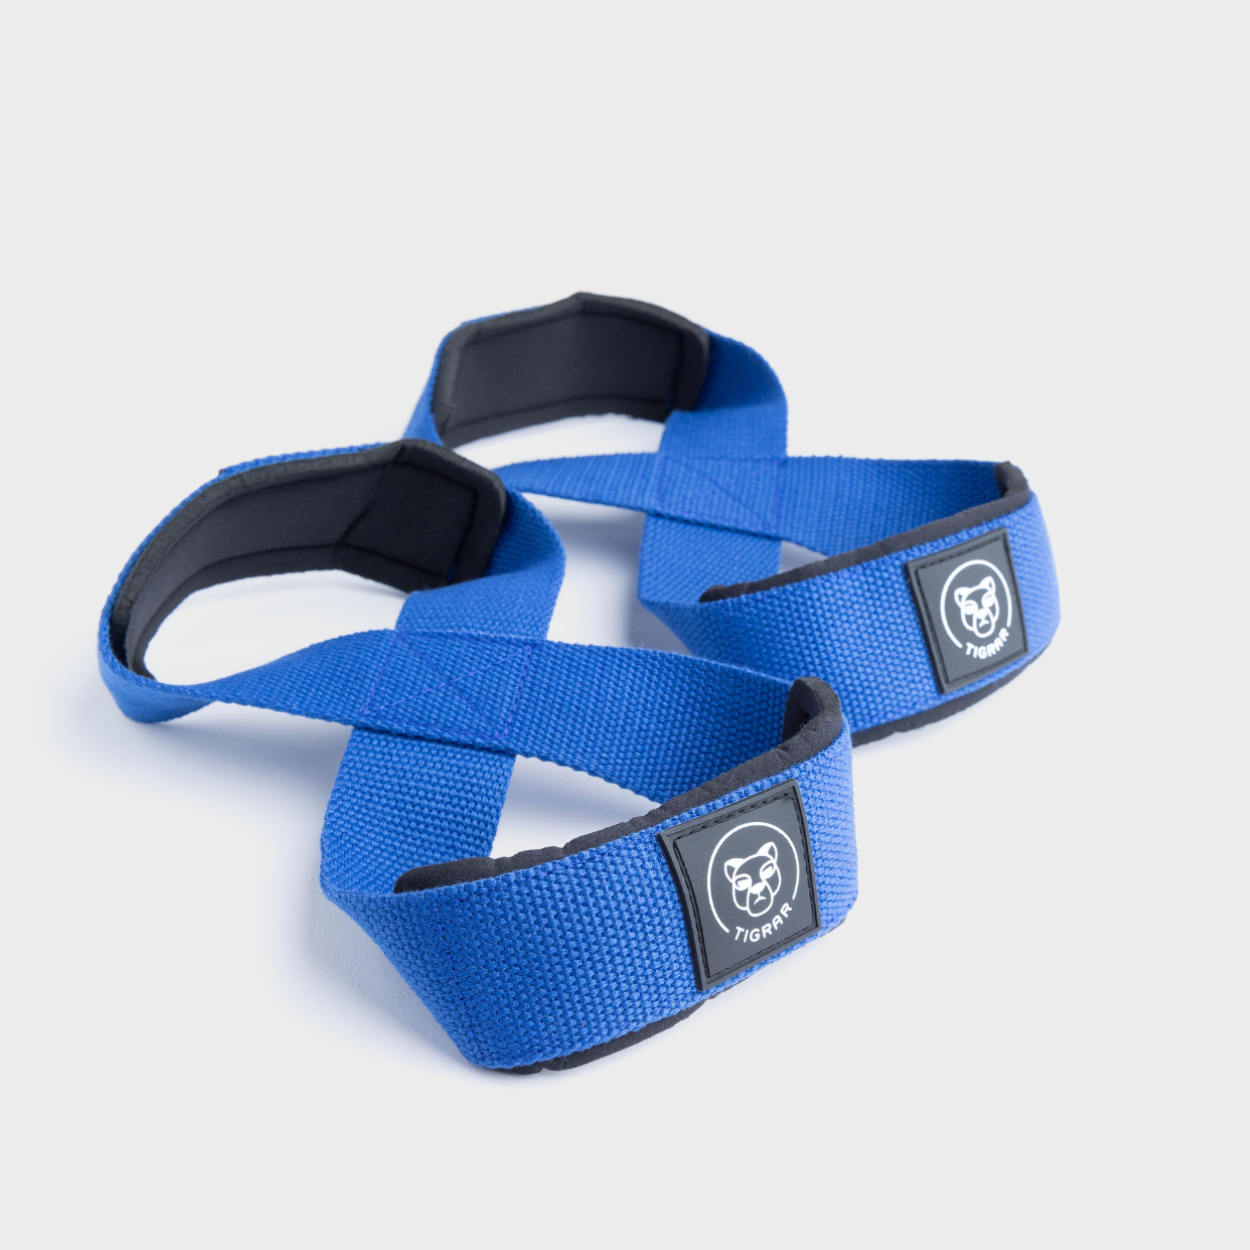 Duurzame en stijlvolle blauwe Tigrar lifting straps in Figure 8 ontwerp, voor een grijze achtergrond.